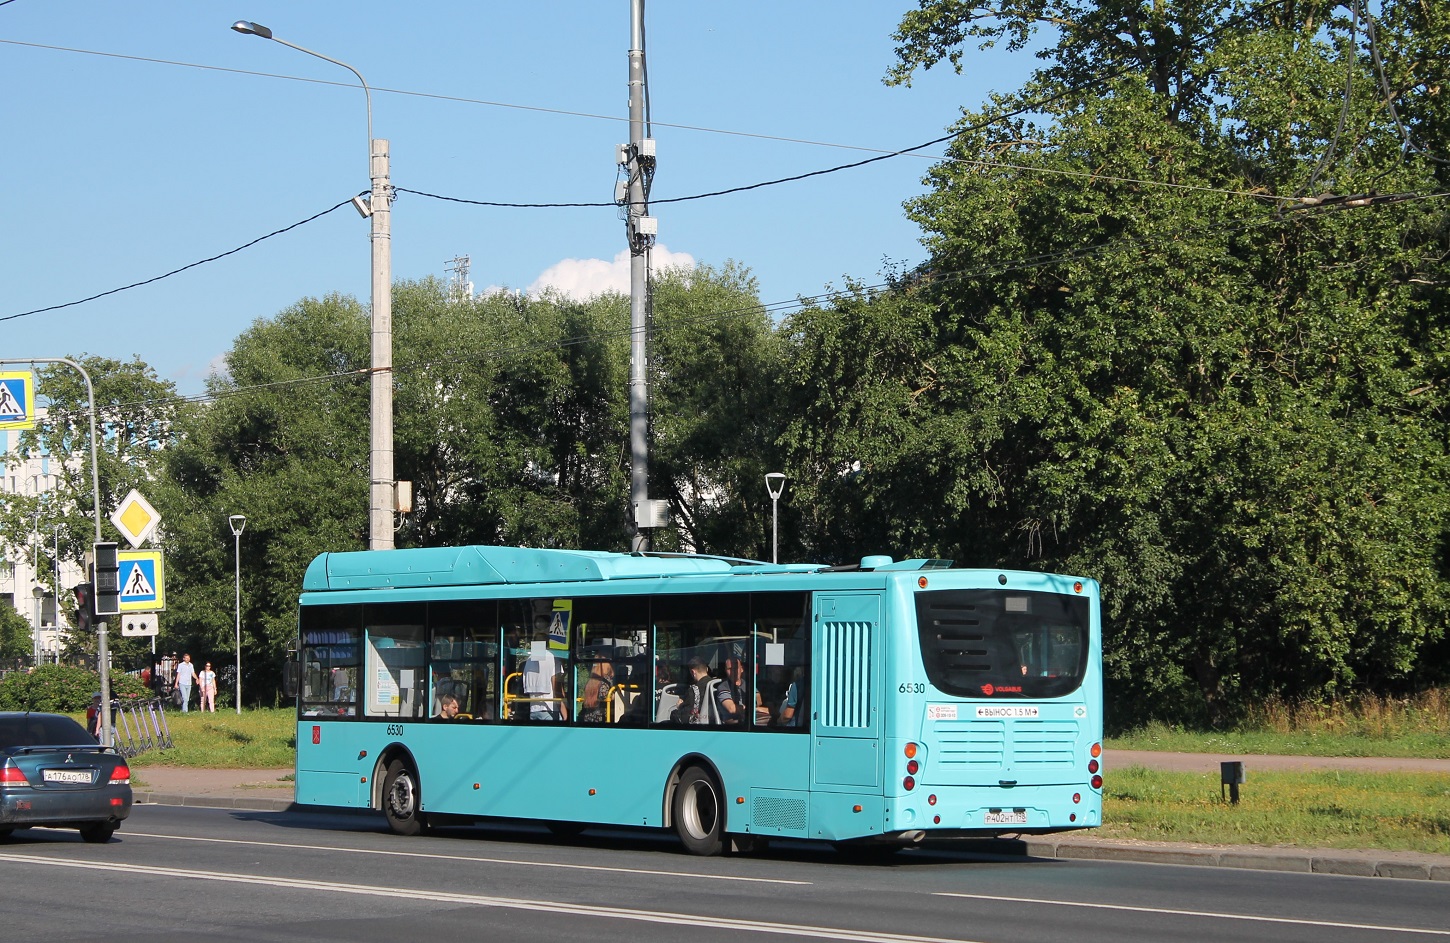 Санкт-Петербург, Volgabus-5270.G4 (CNG) № 6530